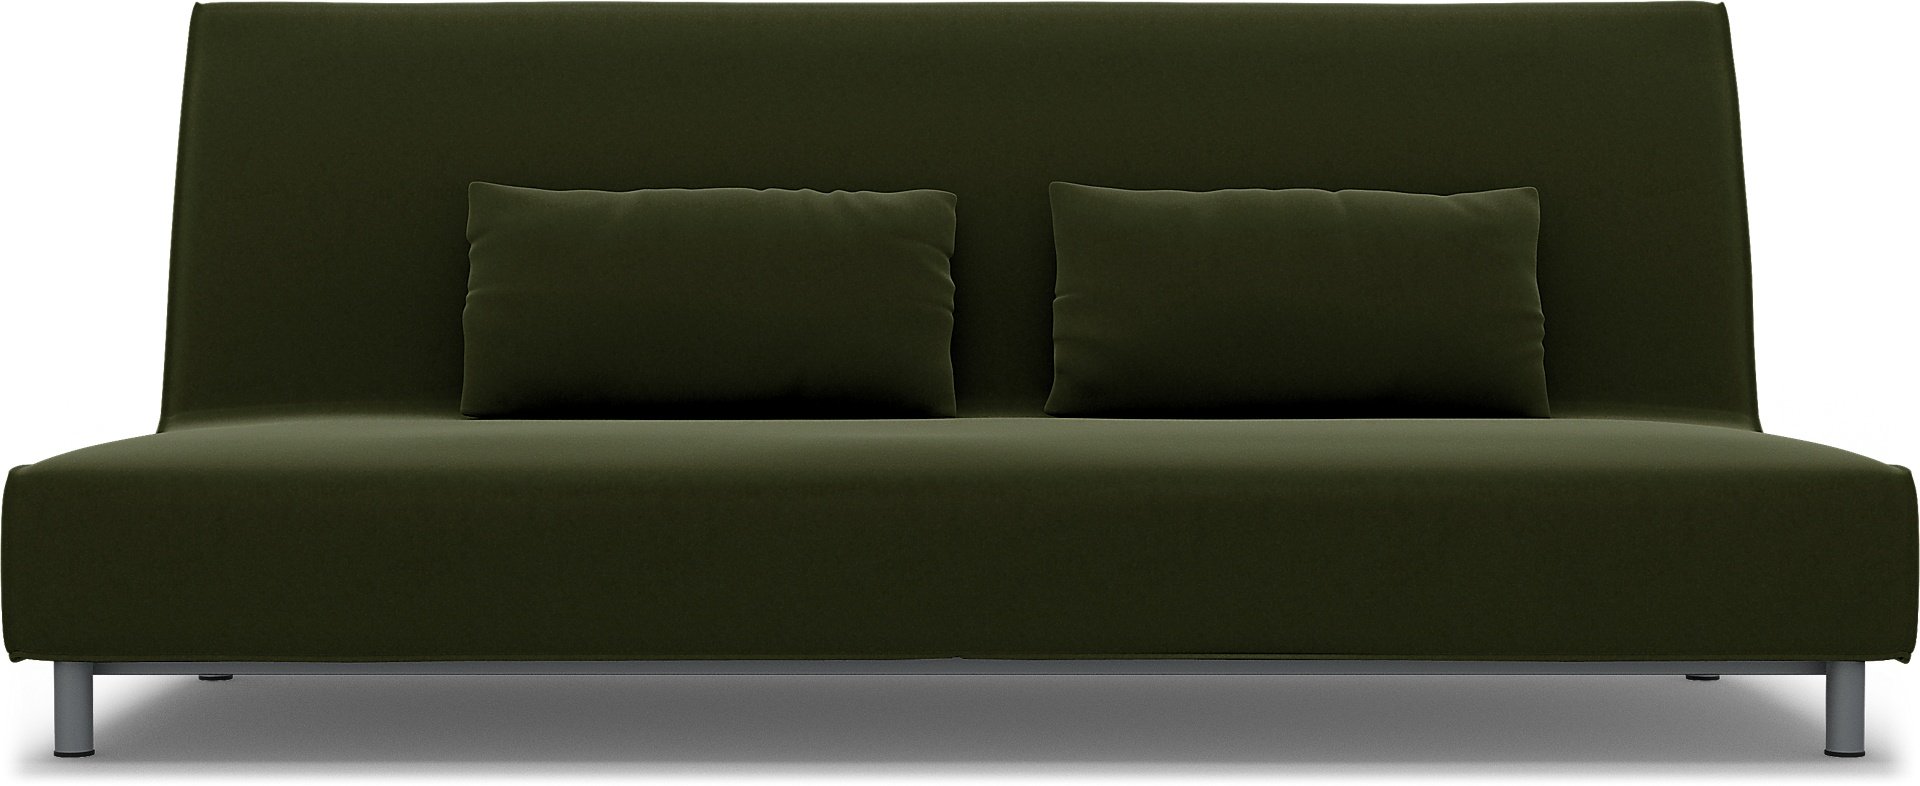 IKEA - Beddinge Sofa Bed Cover, Moss, Velvet - Bemz